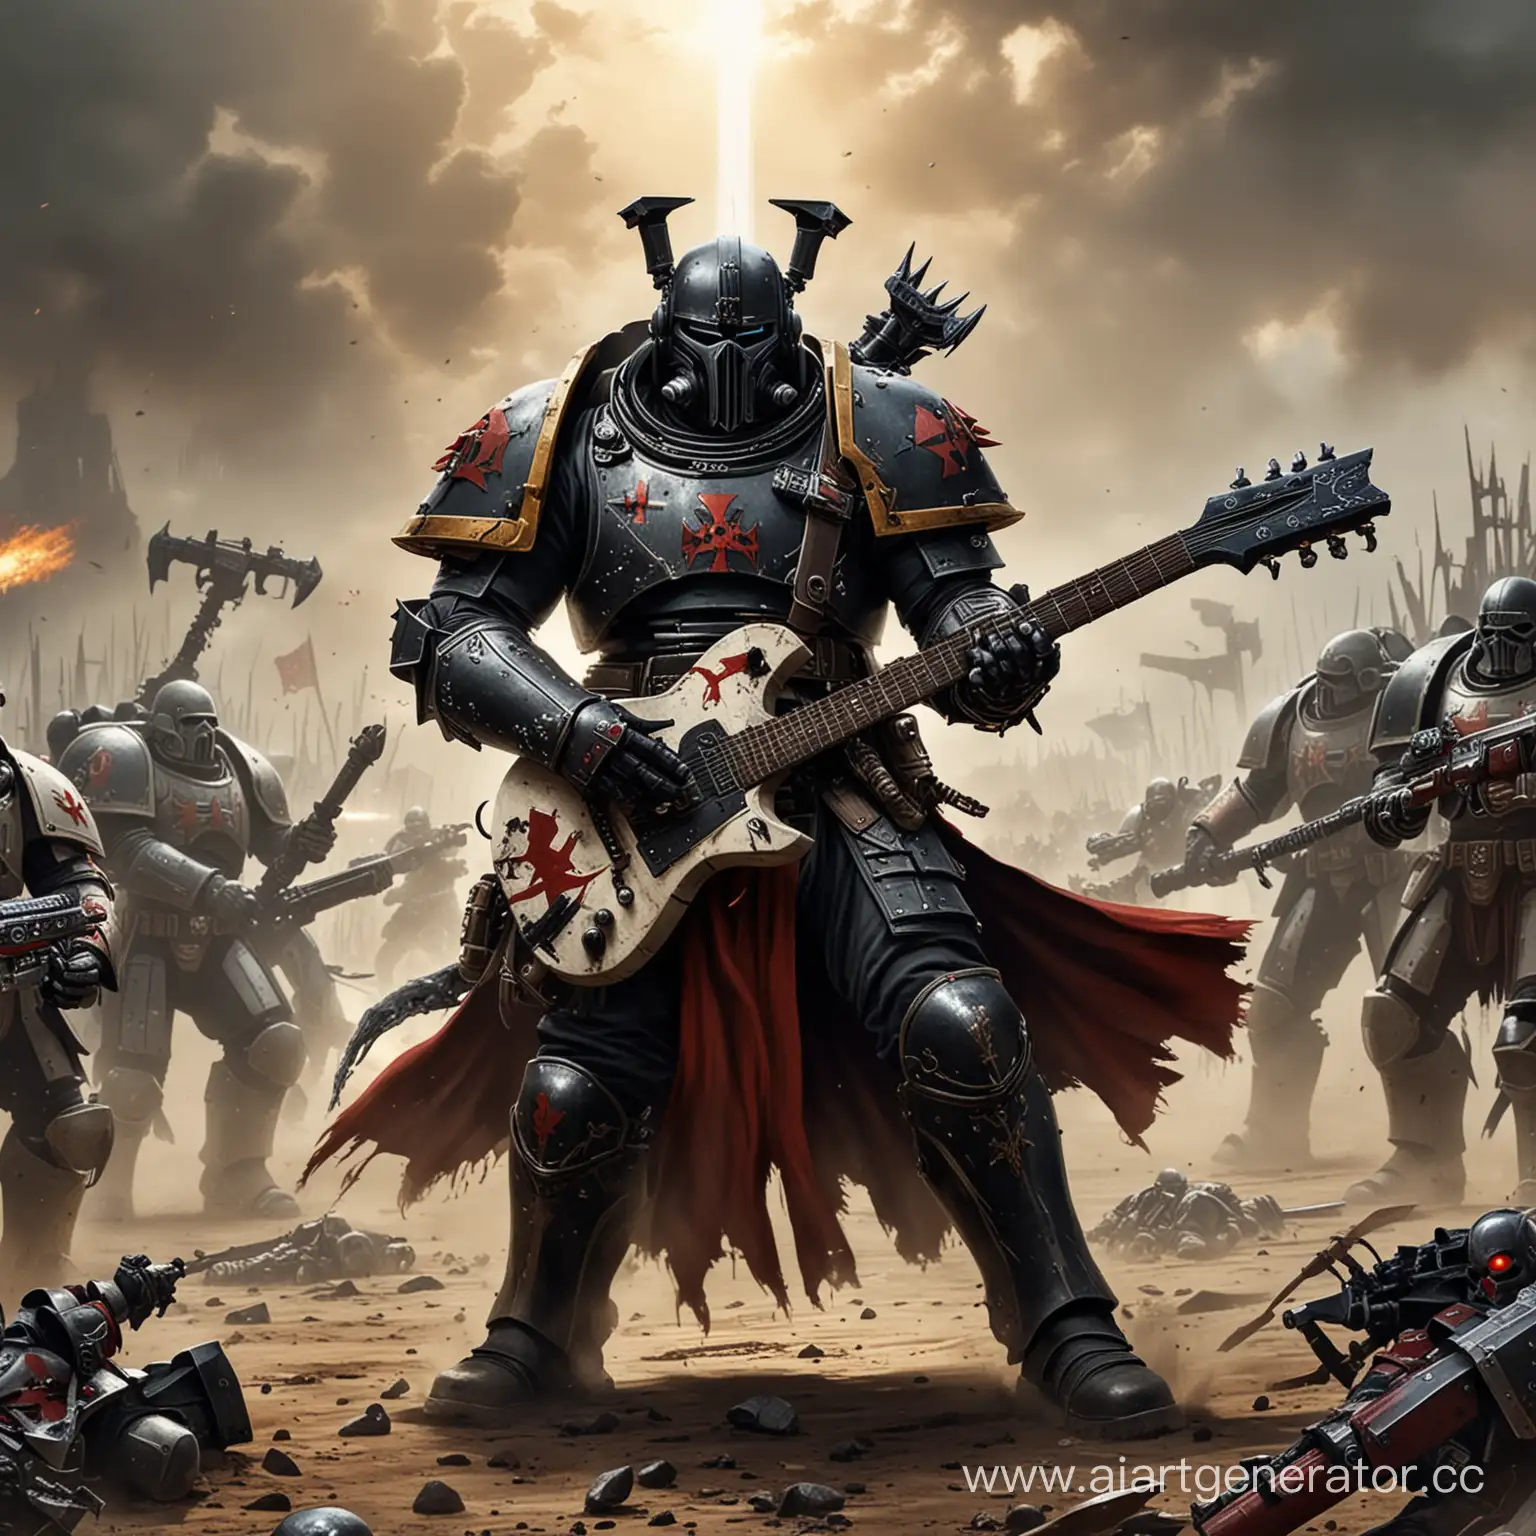 Черный Храмовник и Warhammer 40k, с гитарой в рука, на поле битв